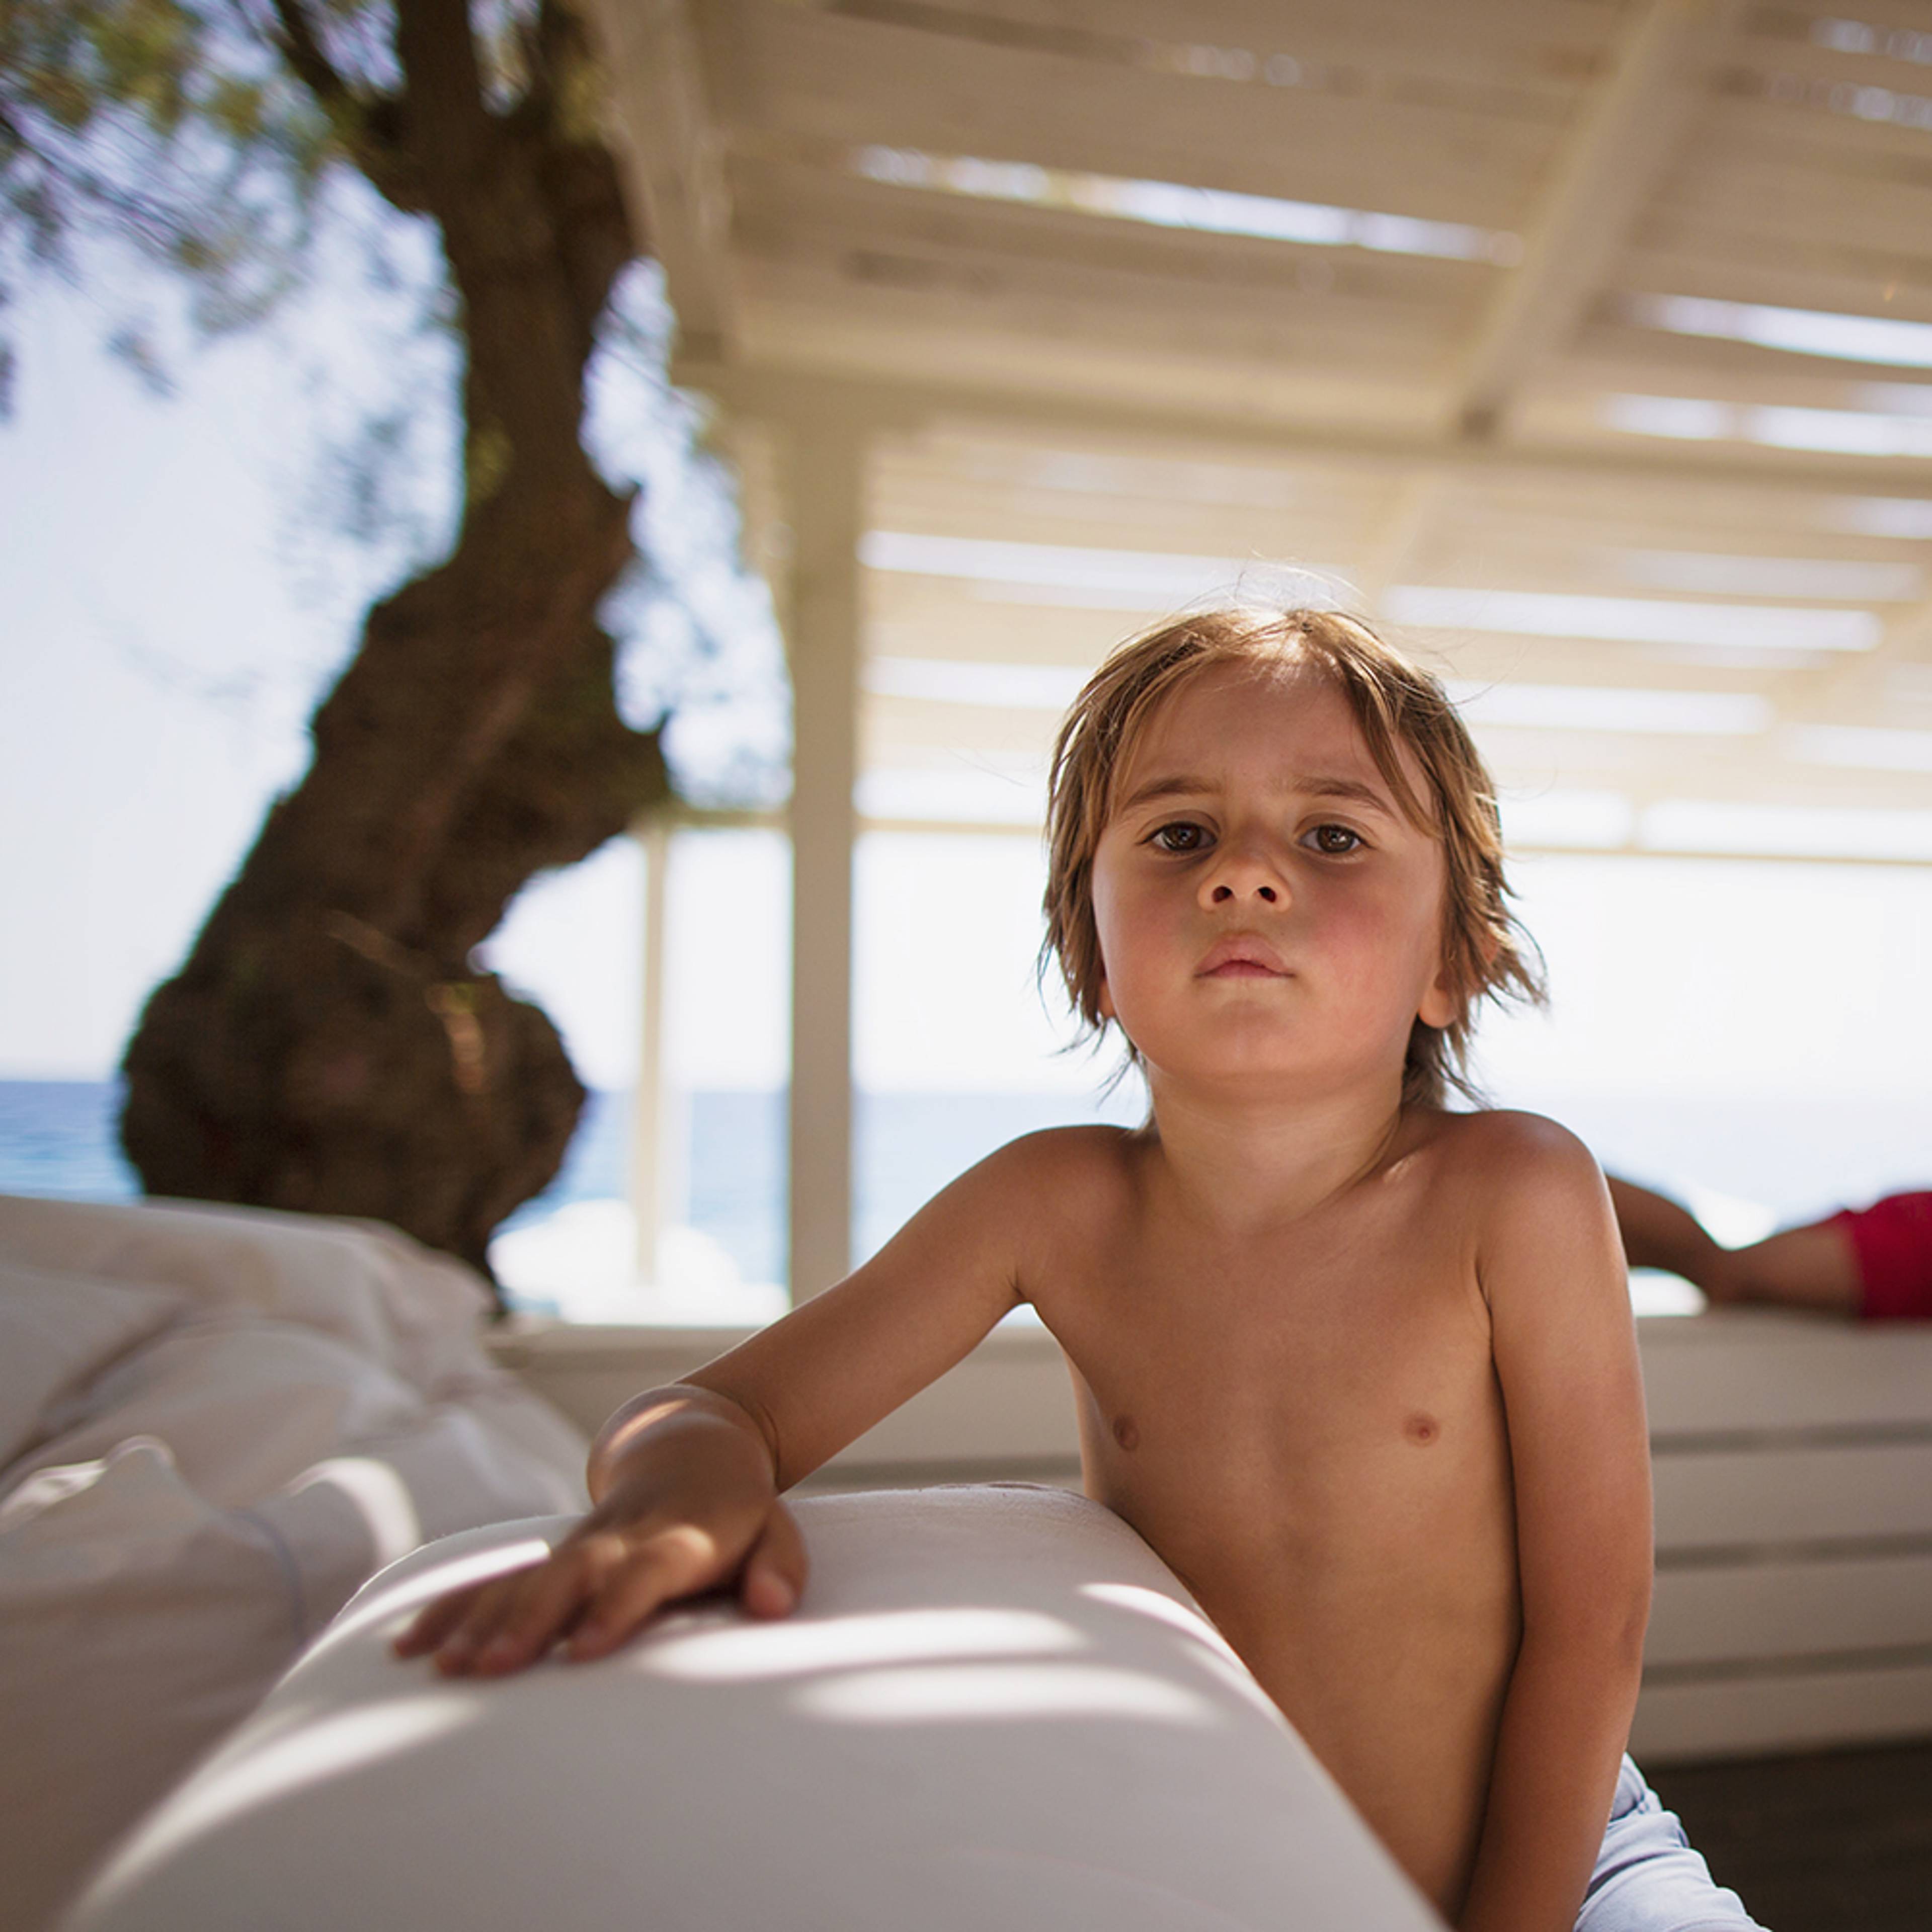 Viaje a Grecia con niños 100% a medida